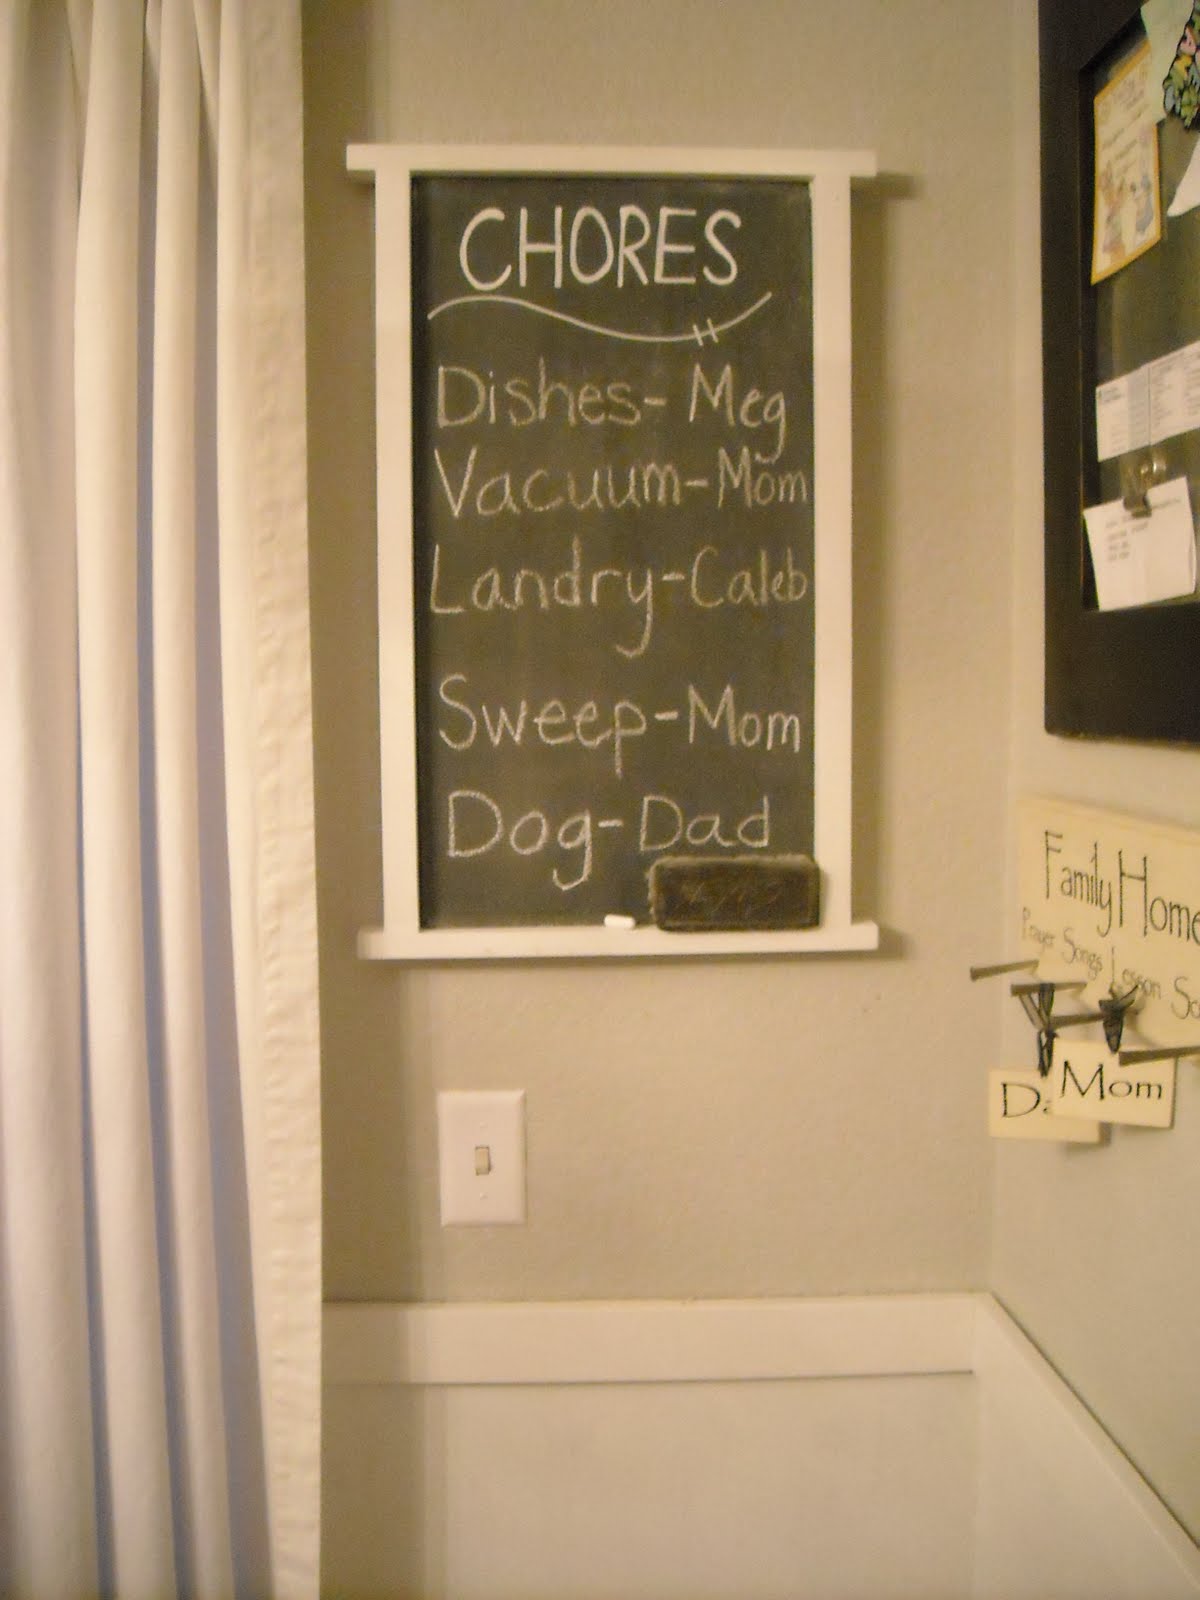 Chalkboard Chore Chart